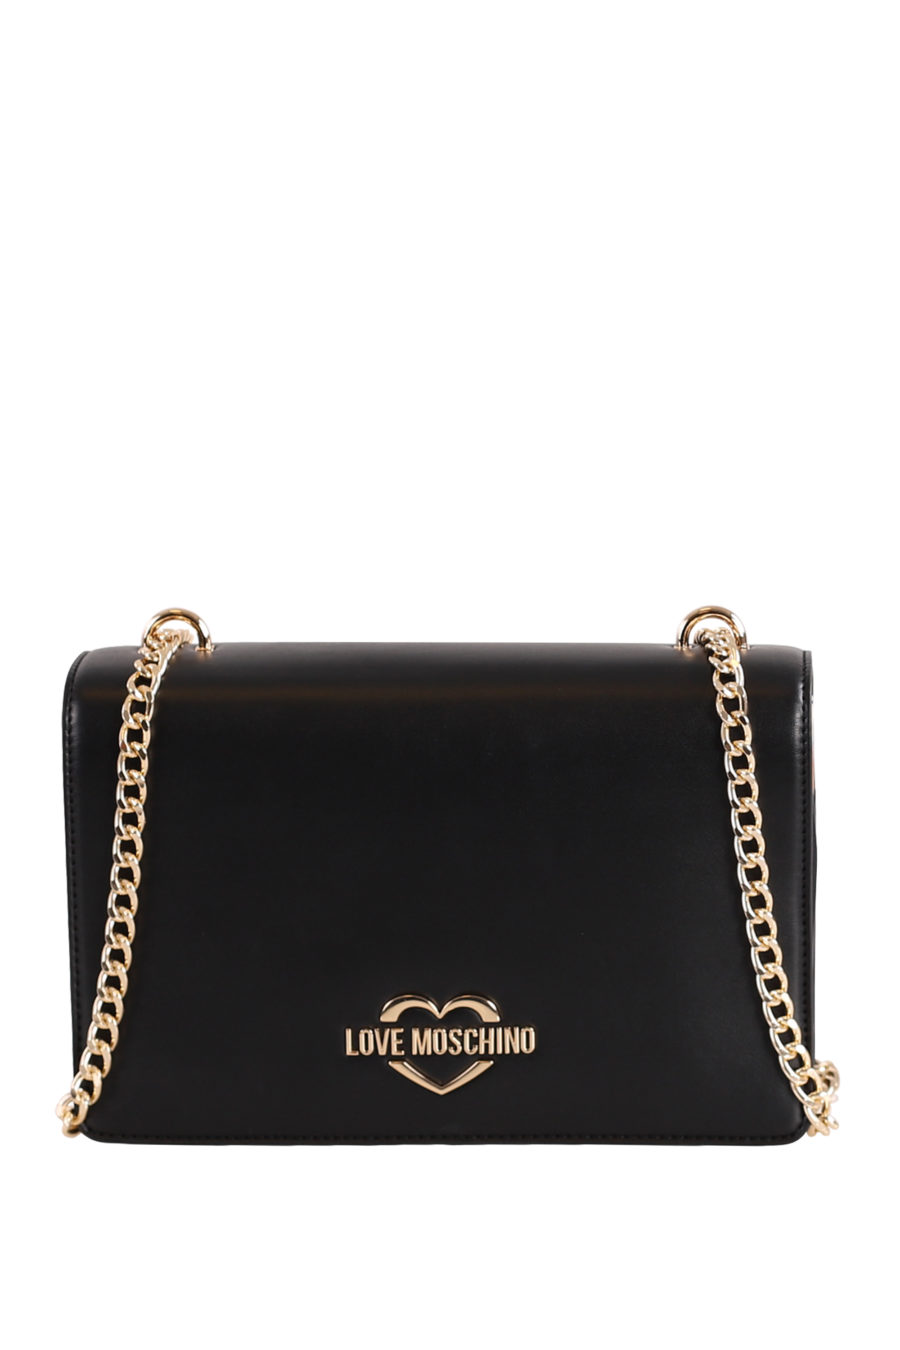 Black shoulder bag with gold logo - IMG 0335